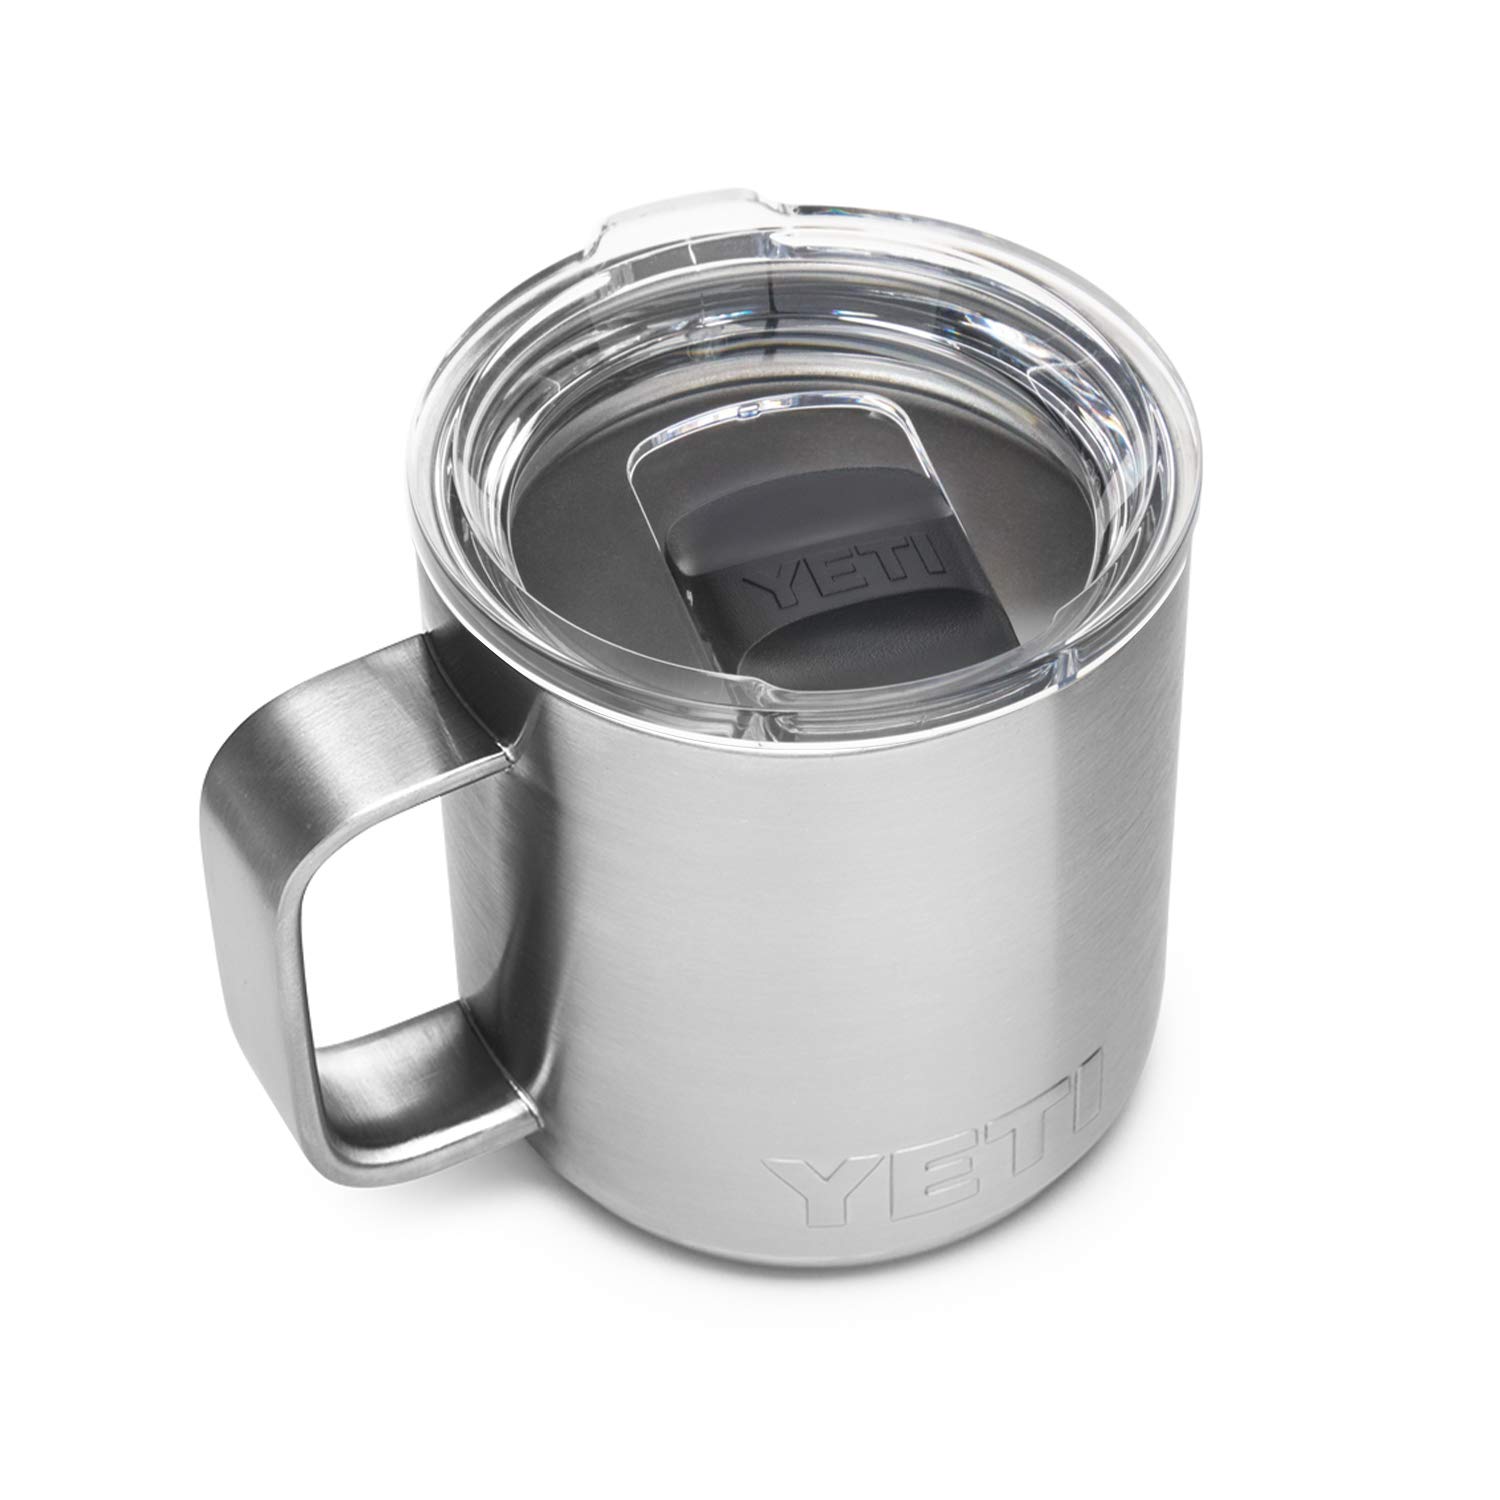 Buy YETI Rambler 14 oz Stainless Steel Vacuum Insulated Mug